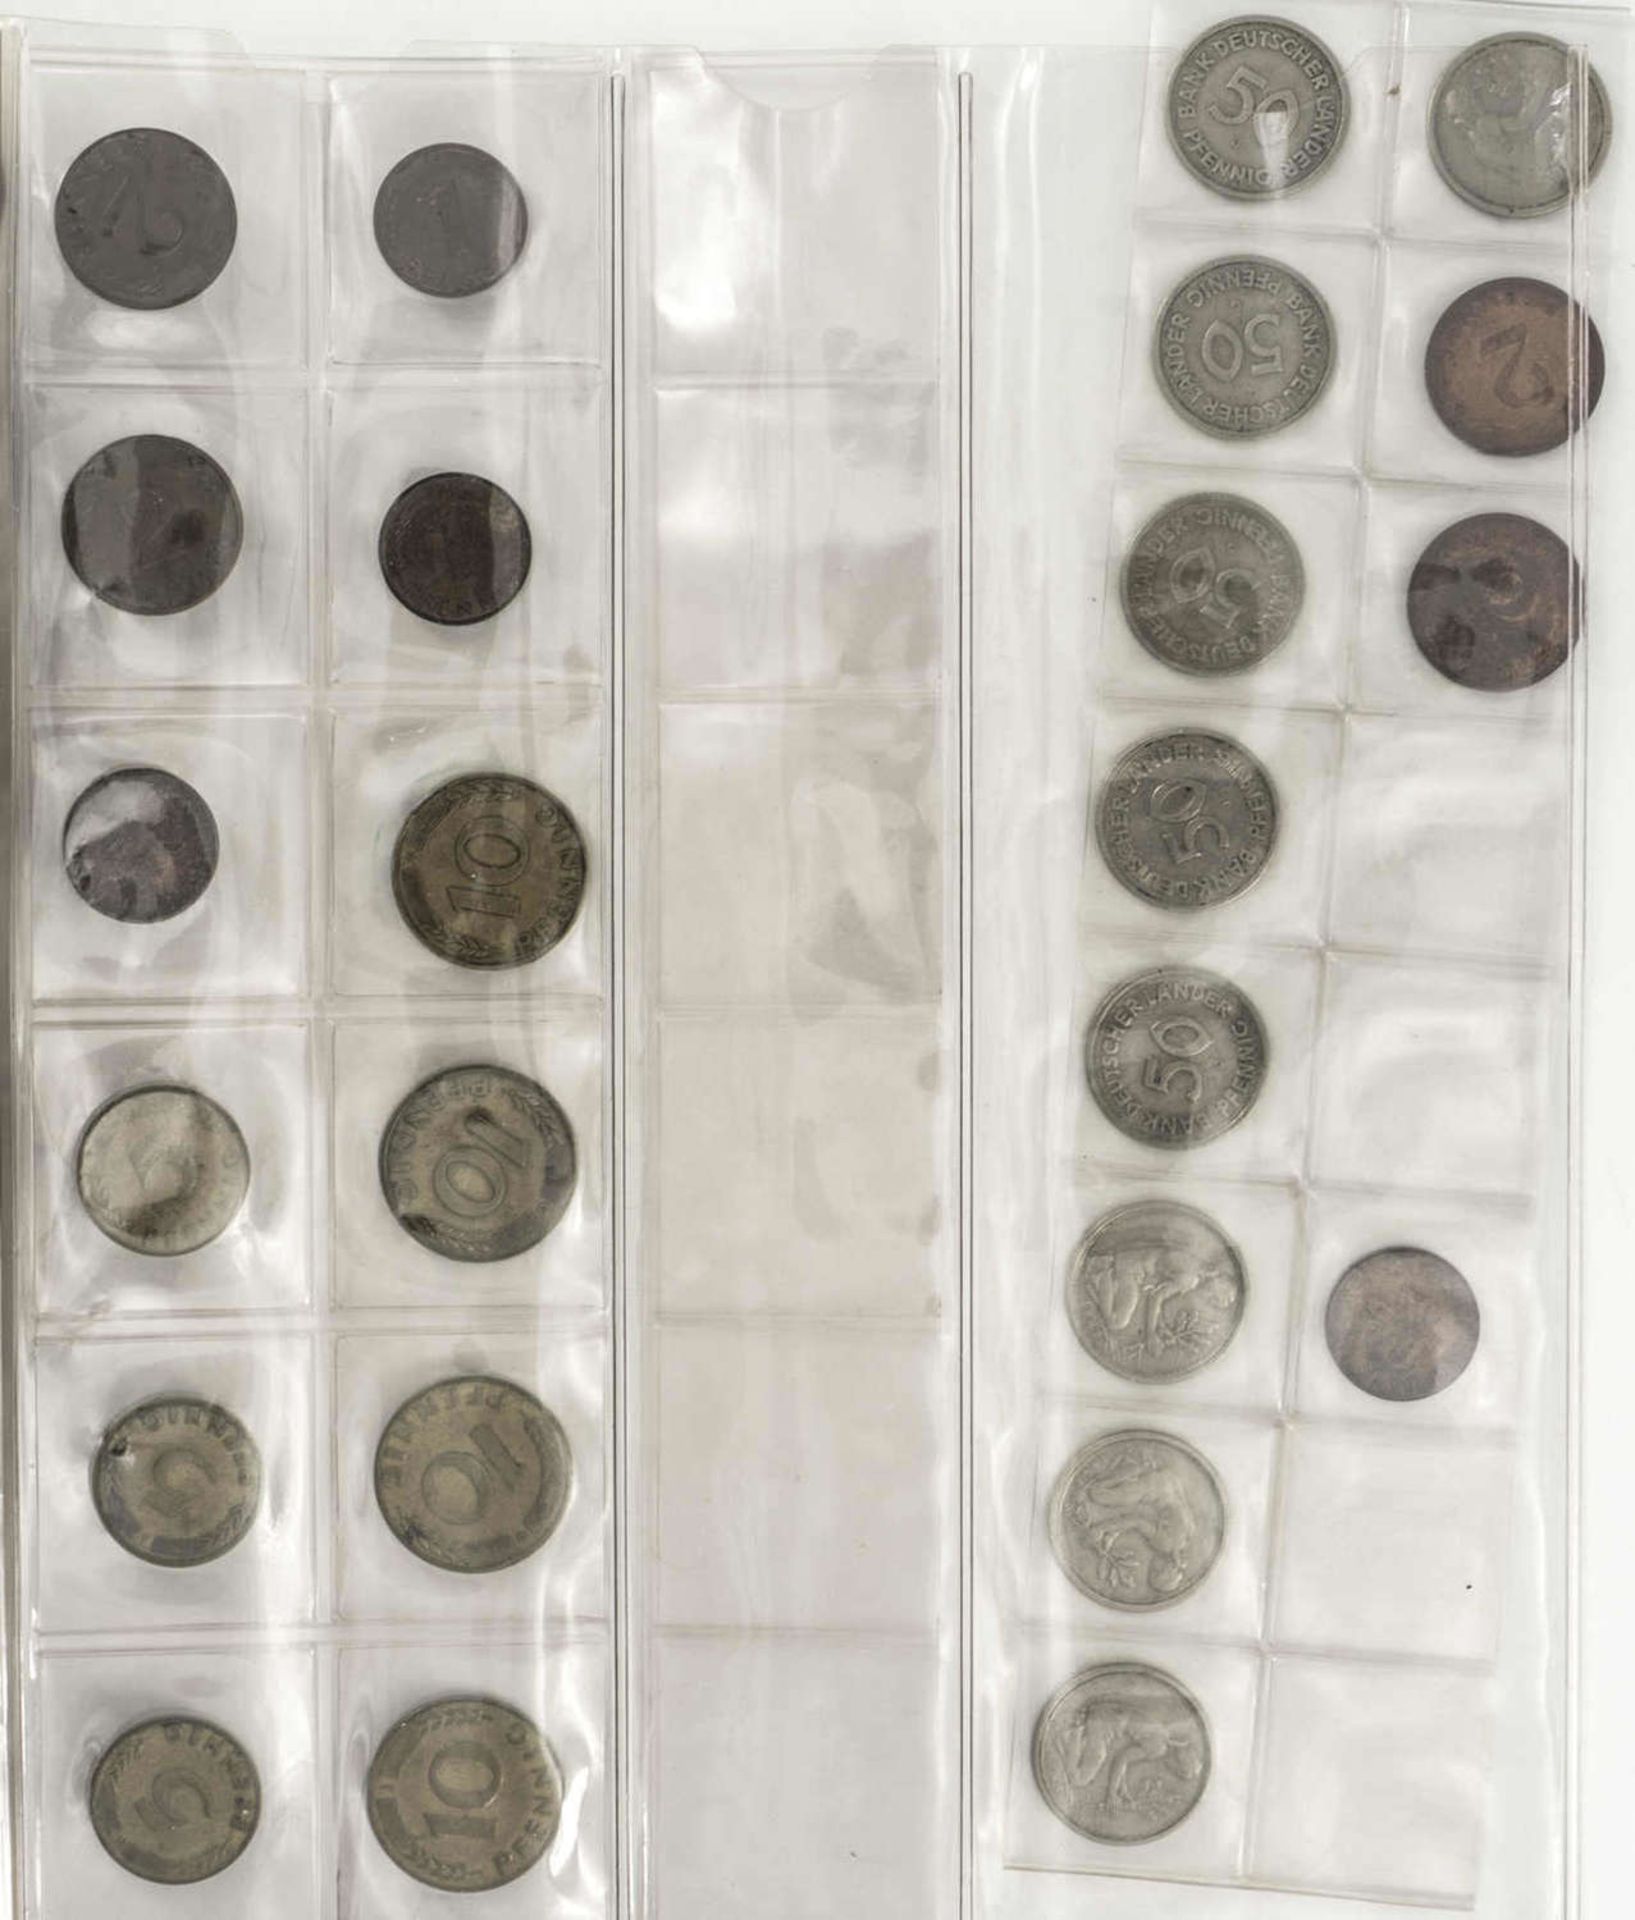 BRD Sammlung 1 Pfennig und 2 Pfennig - Münzen. Überwiegend alle vier Münzprägestätten. Dazu ei - Image 4 of 5